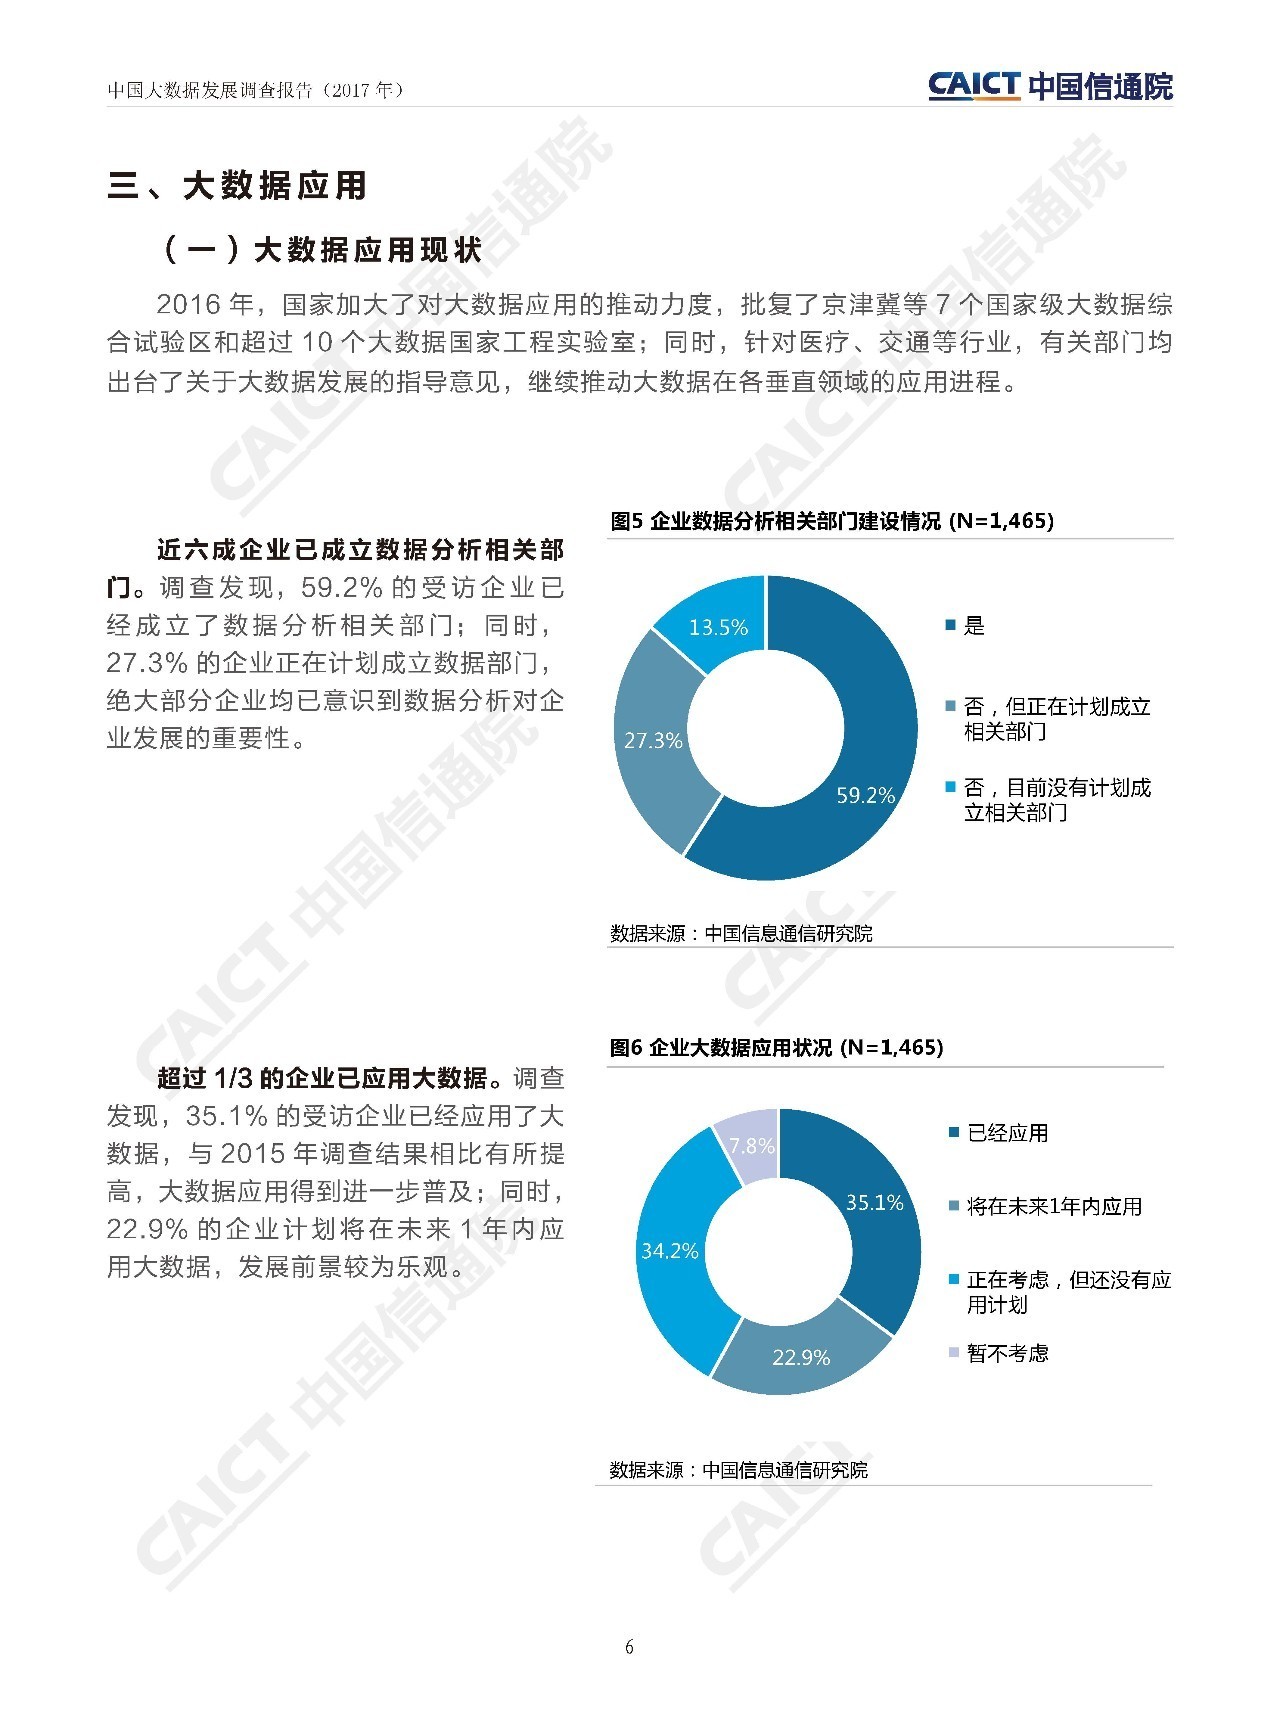 中国工信部电信院《中国大数据发展调查报告（2017年）》